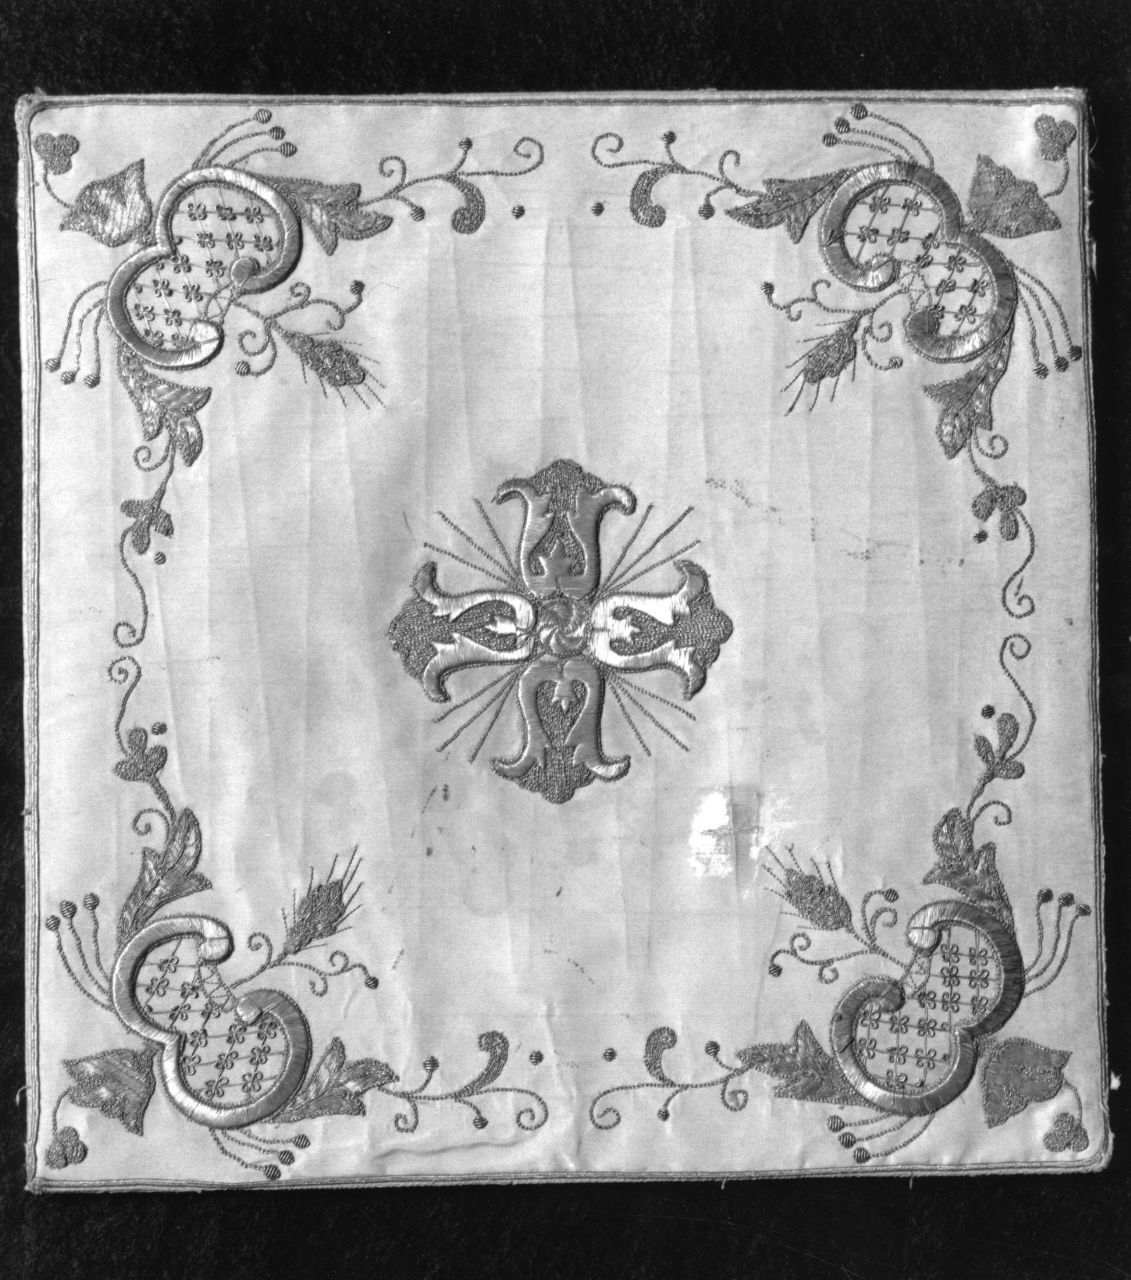 croce, spighe di grano e motivo decorativo a tralci di fiori e foglie (borsa del corporale) - manifattura fiorentina (sec. XVIII)